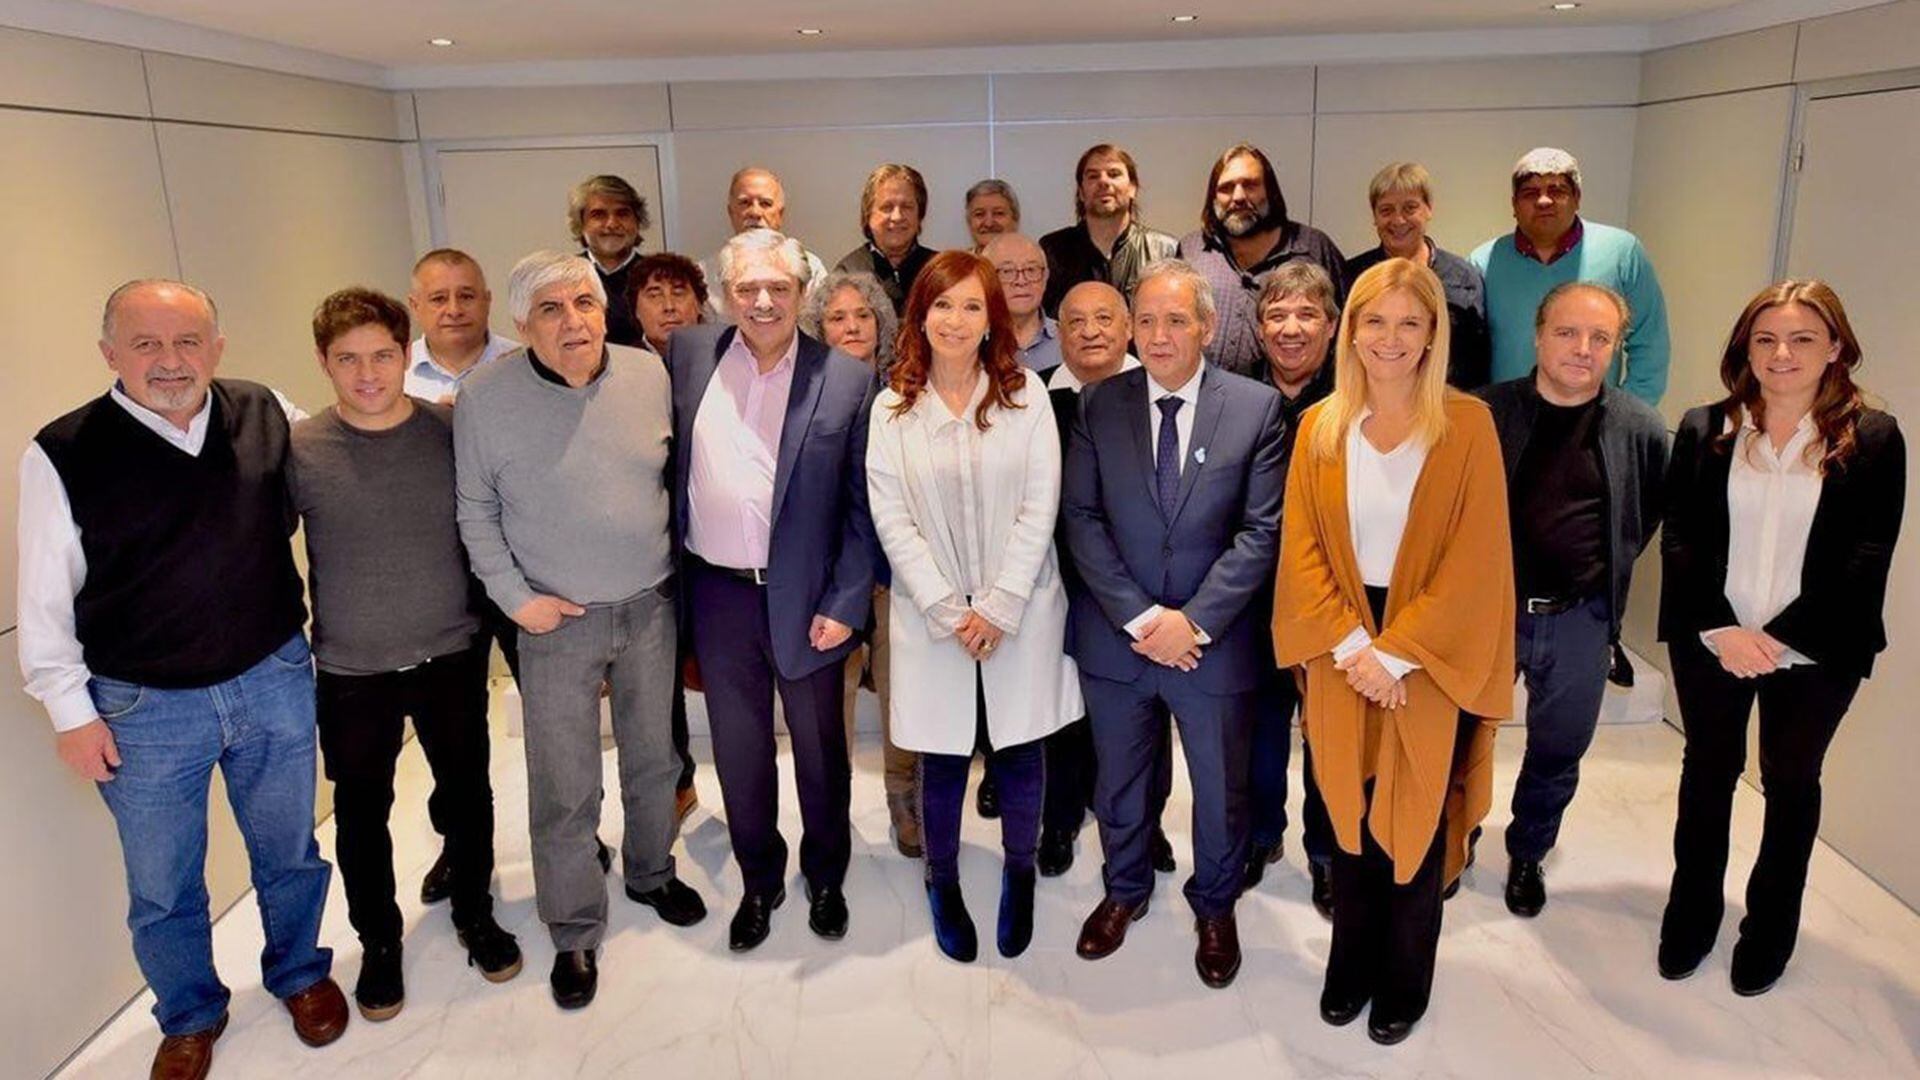 Cristina Kirchner y Alberto Fernández, con Axedl Kicillof y sindicalistas como Hugo Moyano, Pablo Moyano y Sergio Palazzo, entre otros

